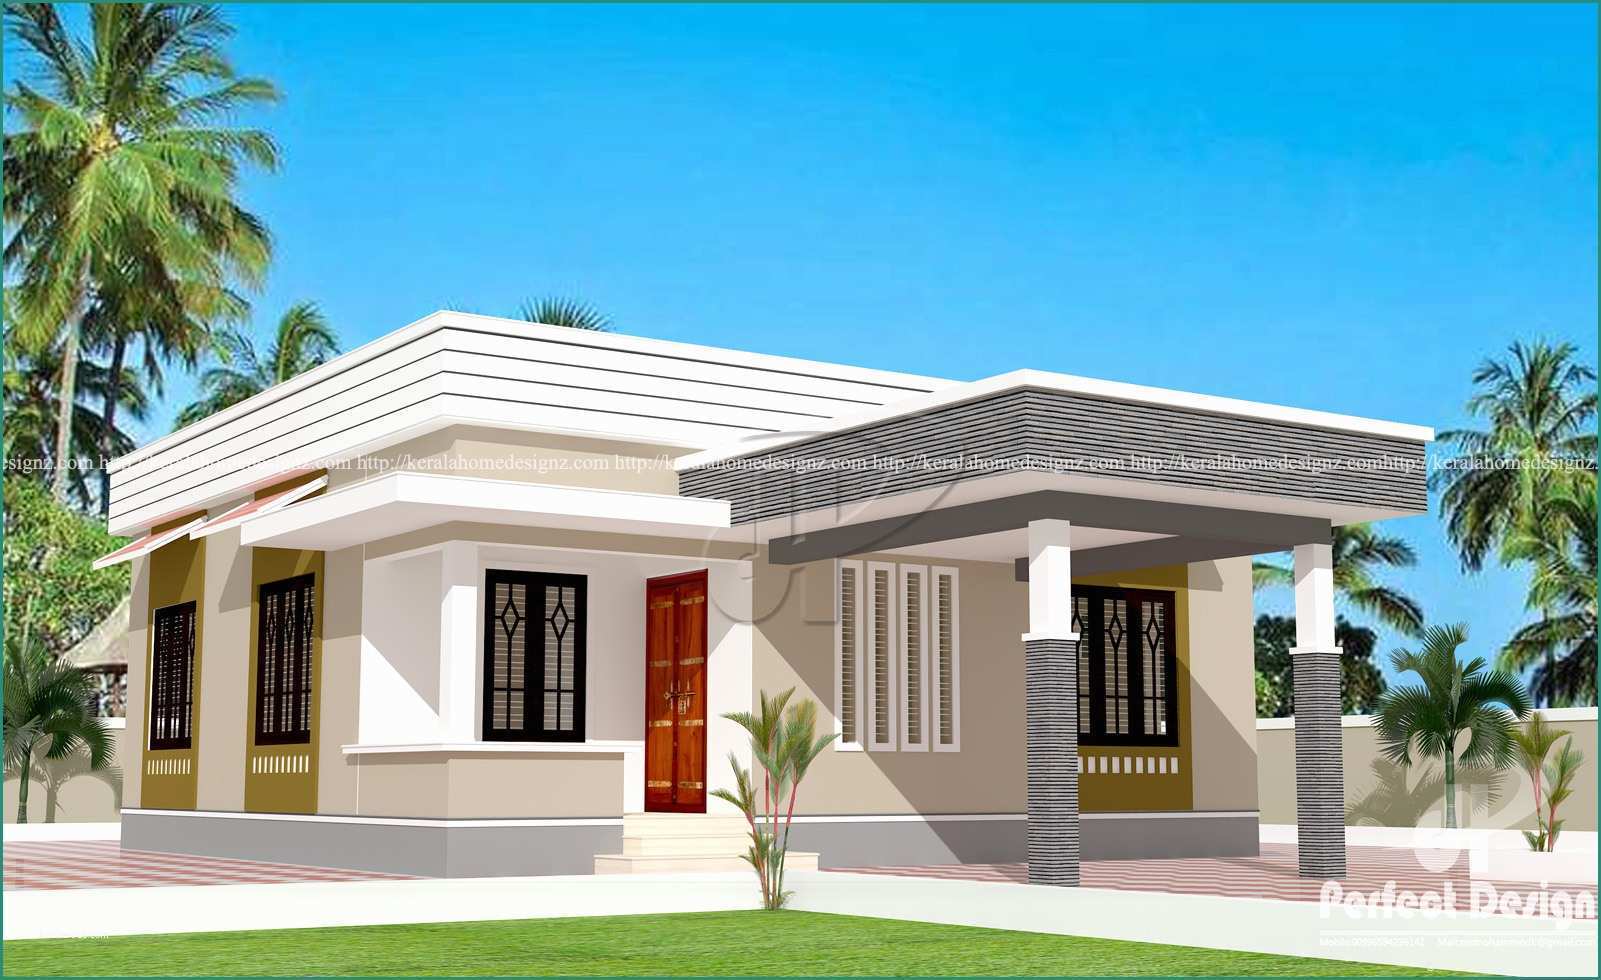 Poltrone Design Low Cost E 829 Sq Ft Low Cost Home Designs – Kerala Home Design